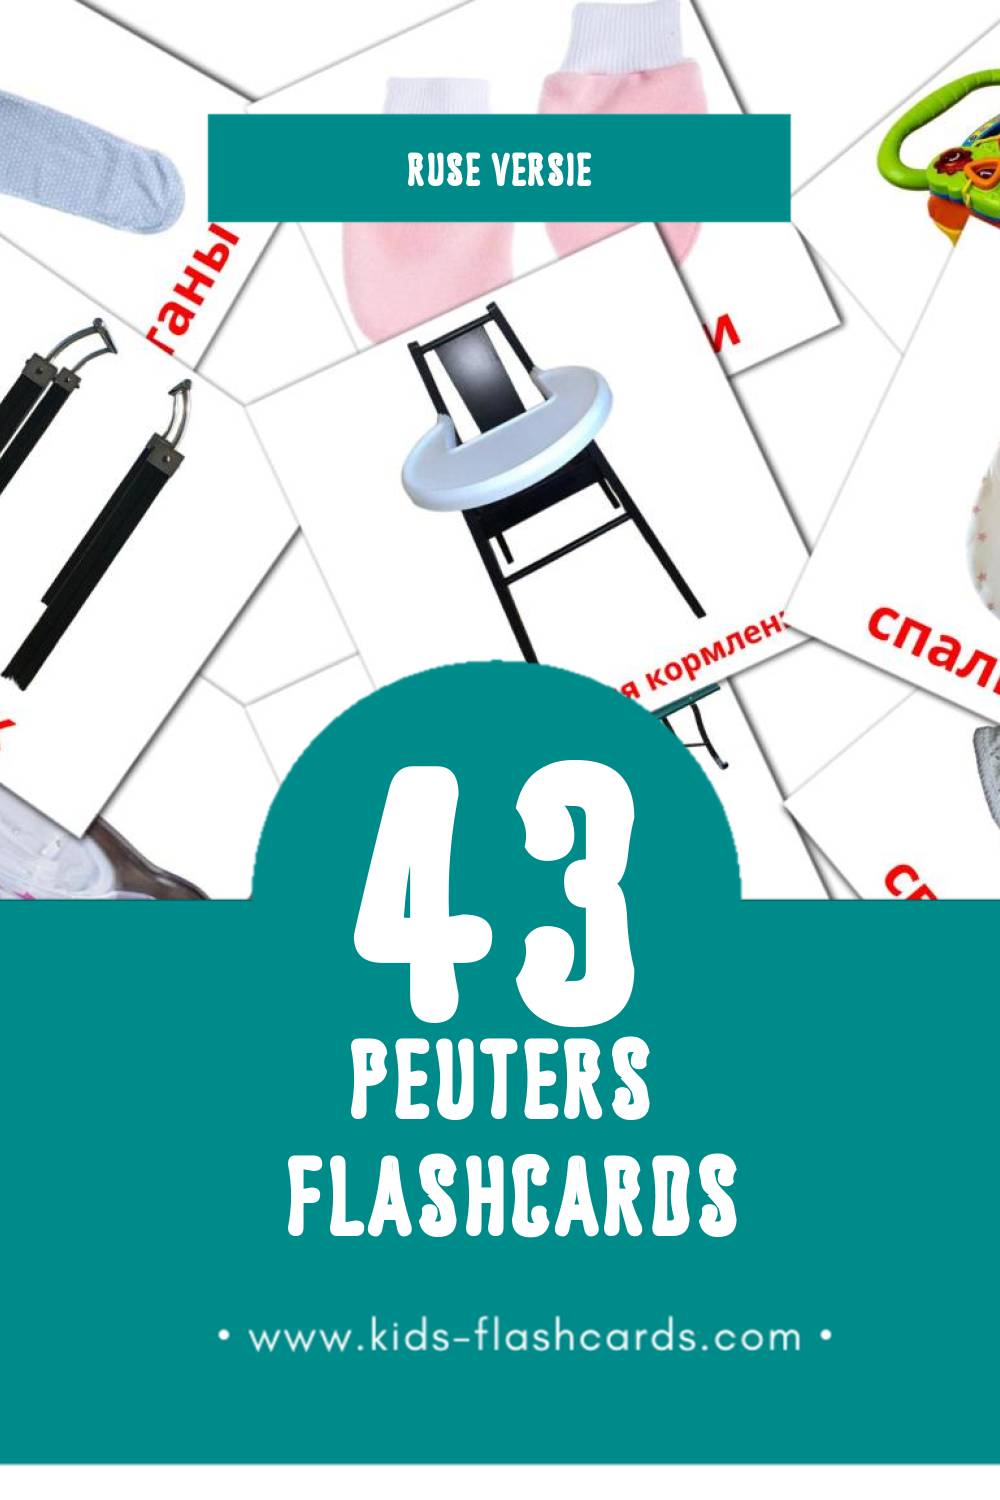 Visuele Малыш Flashcards voor Kleuters (43 kaarten in het Rus)